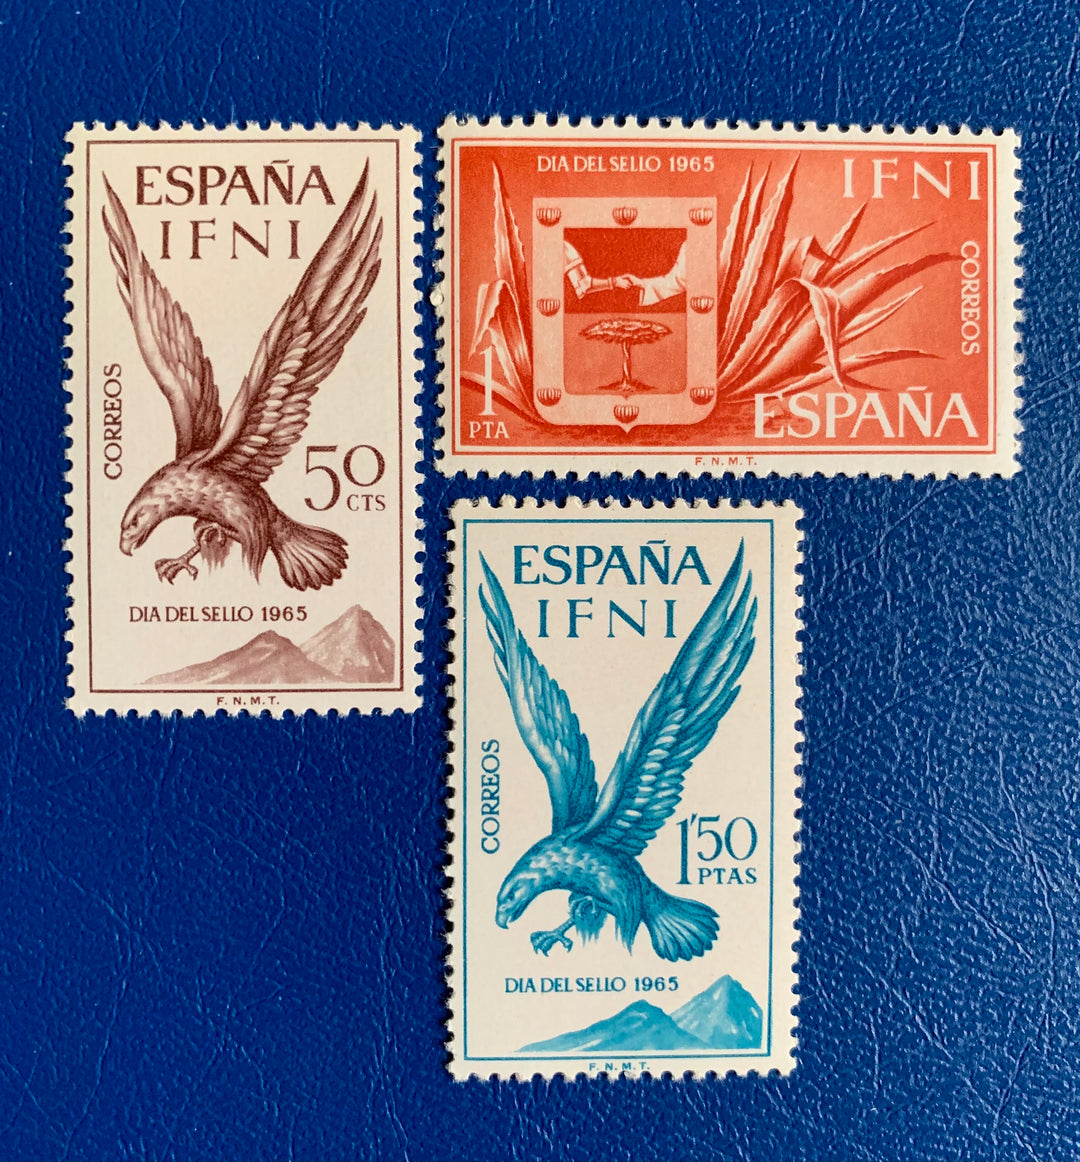 Sp. Ifni- Original Vintage Postage Stamps- 1965 - Stamp Day - Eagles